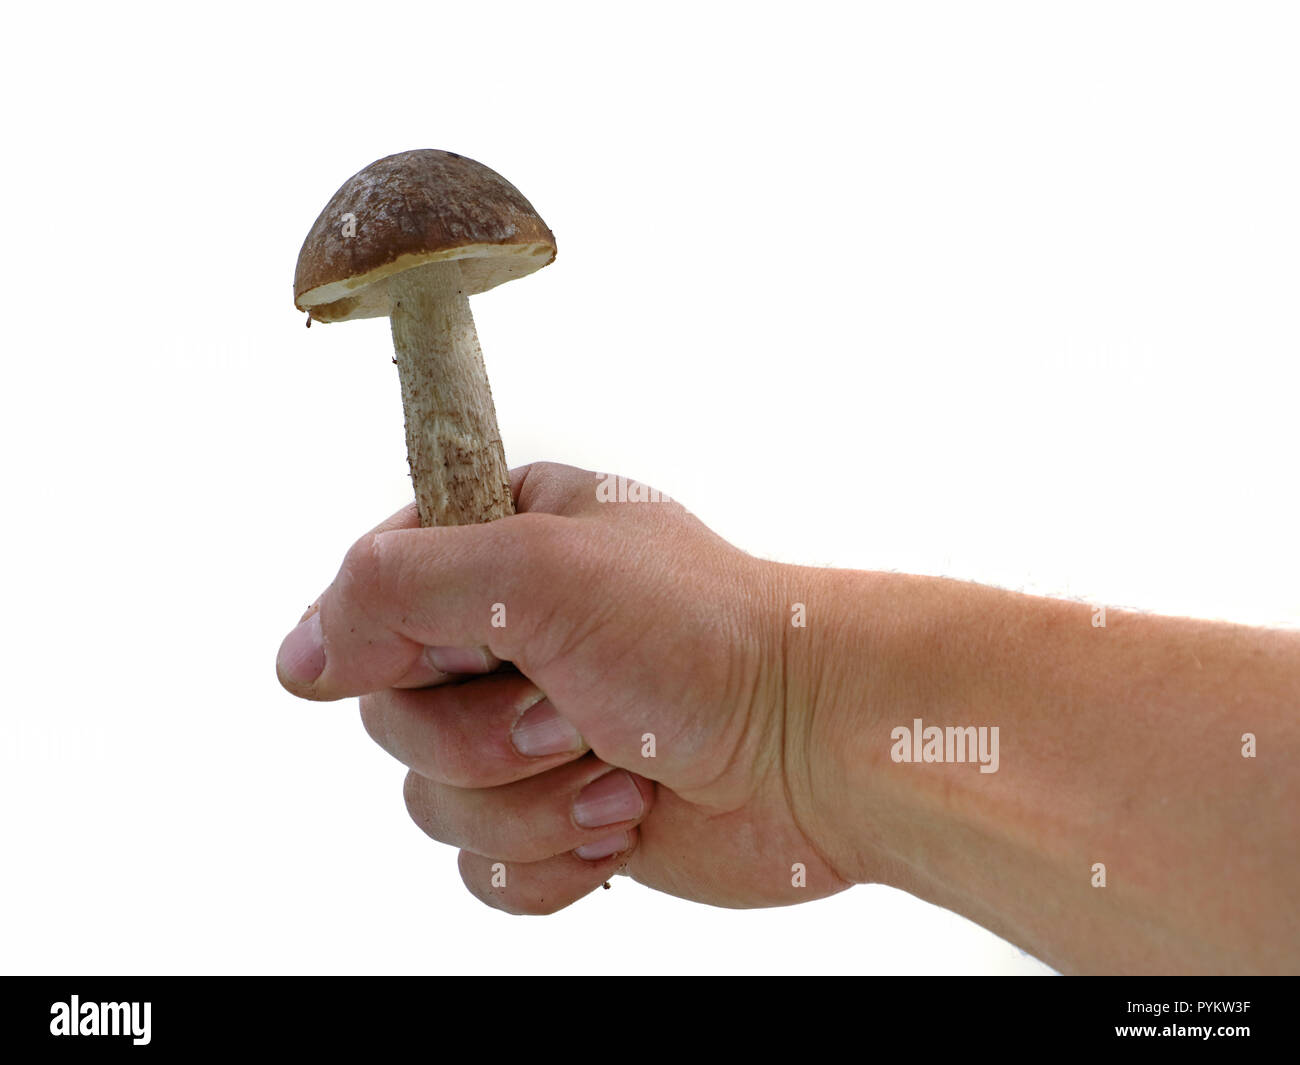 La main des hommes est holding mushroom isolé sur fond blanc, studio shot Banque D'Images